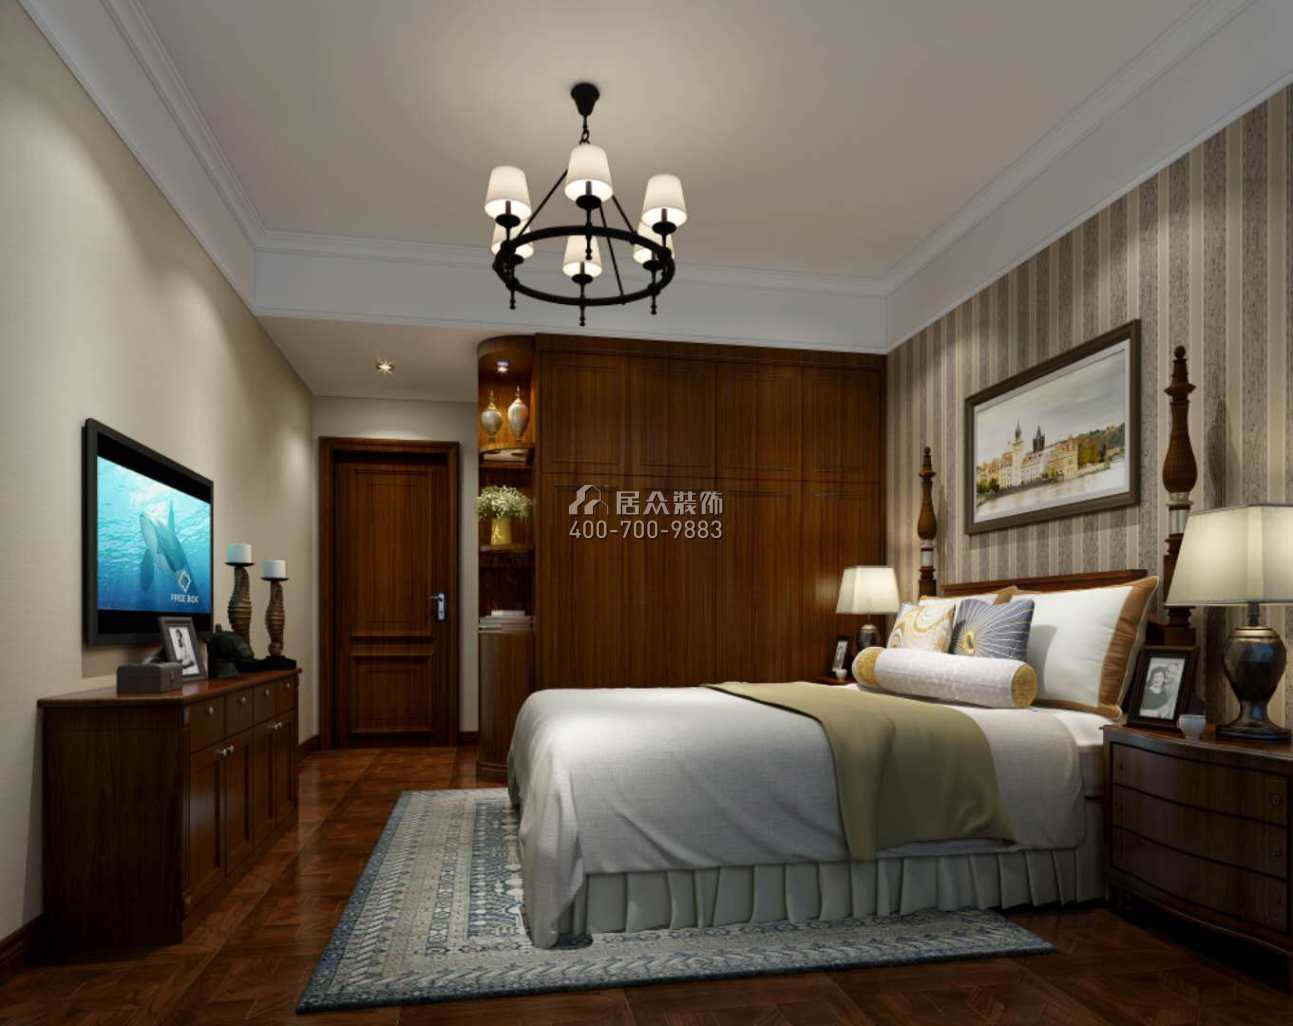 维港半岛150平方米美式风格平层户型卧室kok电竞平台效果图